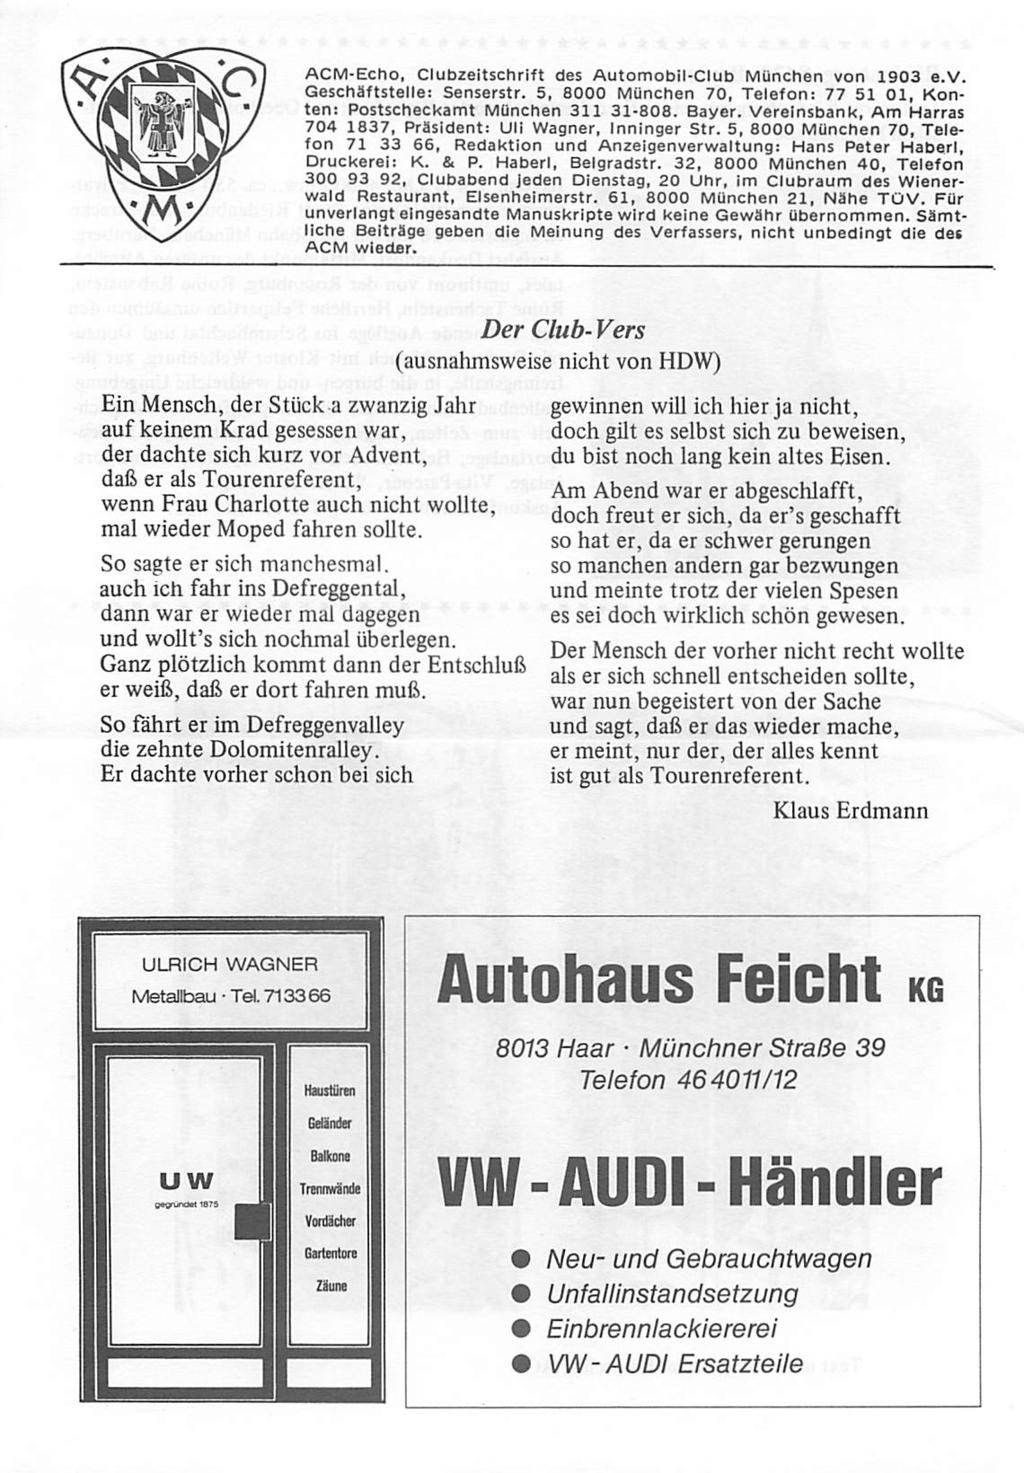 ACM-Echo, Clubzeitschrift des Automobil-Club München von 1903 e.v. Geschäftstelle: Senserstr. 5, 8000 München 70, Telefon: 77 51 Ol, Kon ten: Postscheckamt München 311 31-808. Bayer.